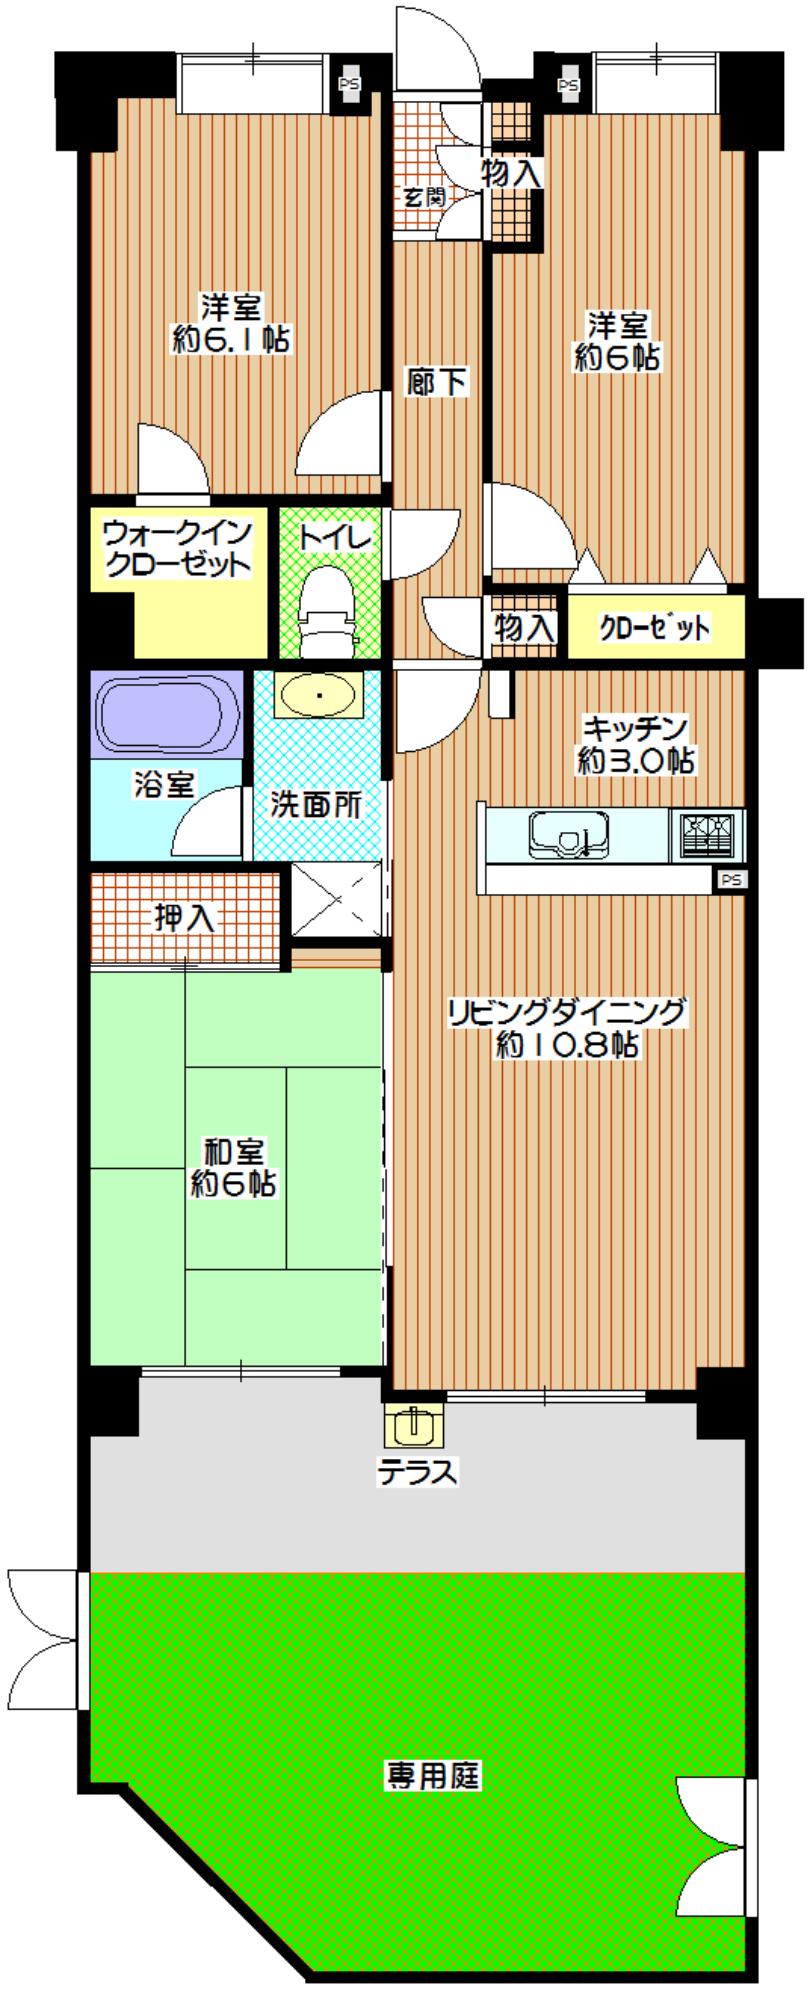 Floor plan. 3LDK, Price 19,800,000 yen, Occupied area 70.75 sq m